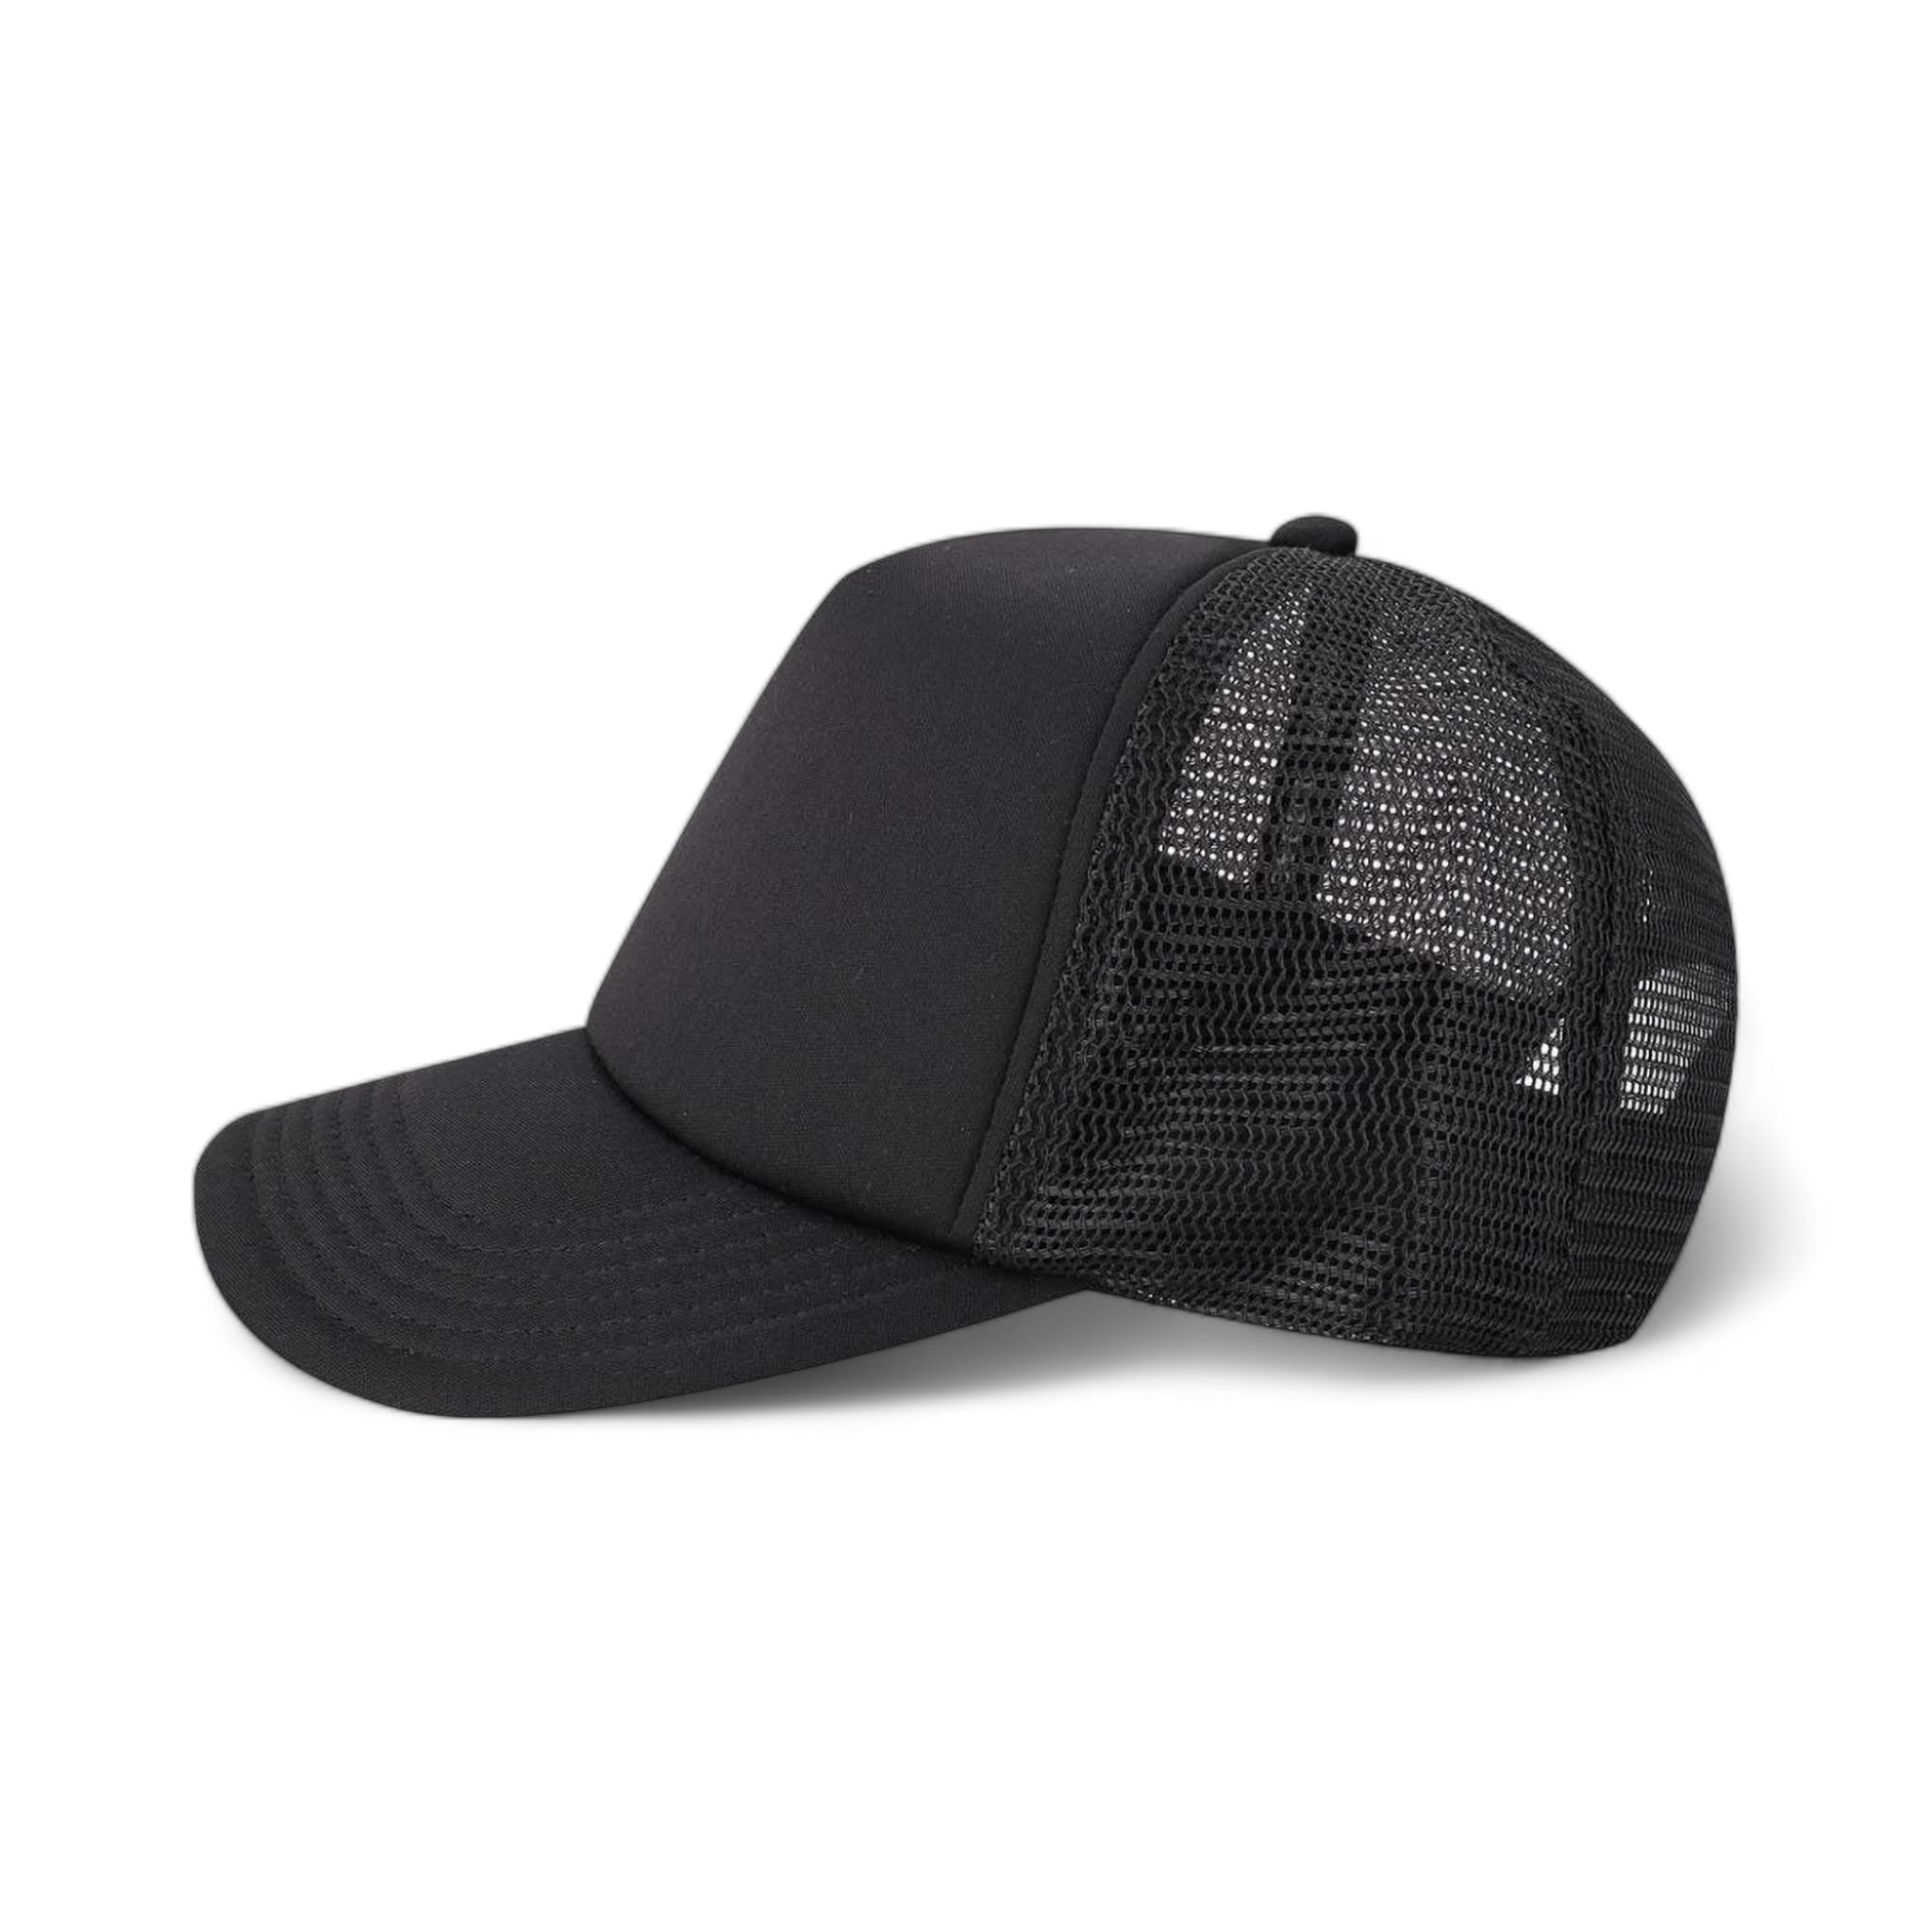 Side view of LEGACY LTA custom hat in black